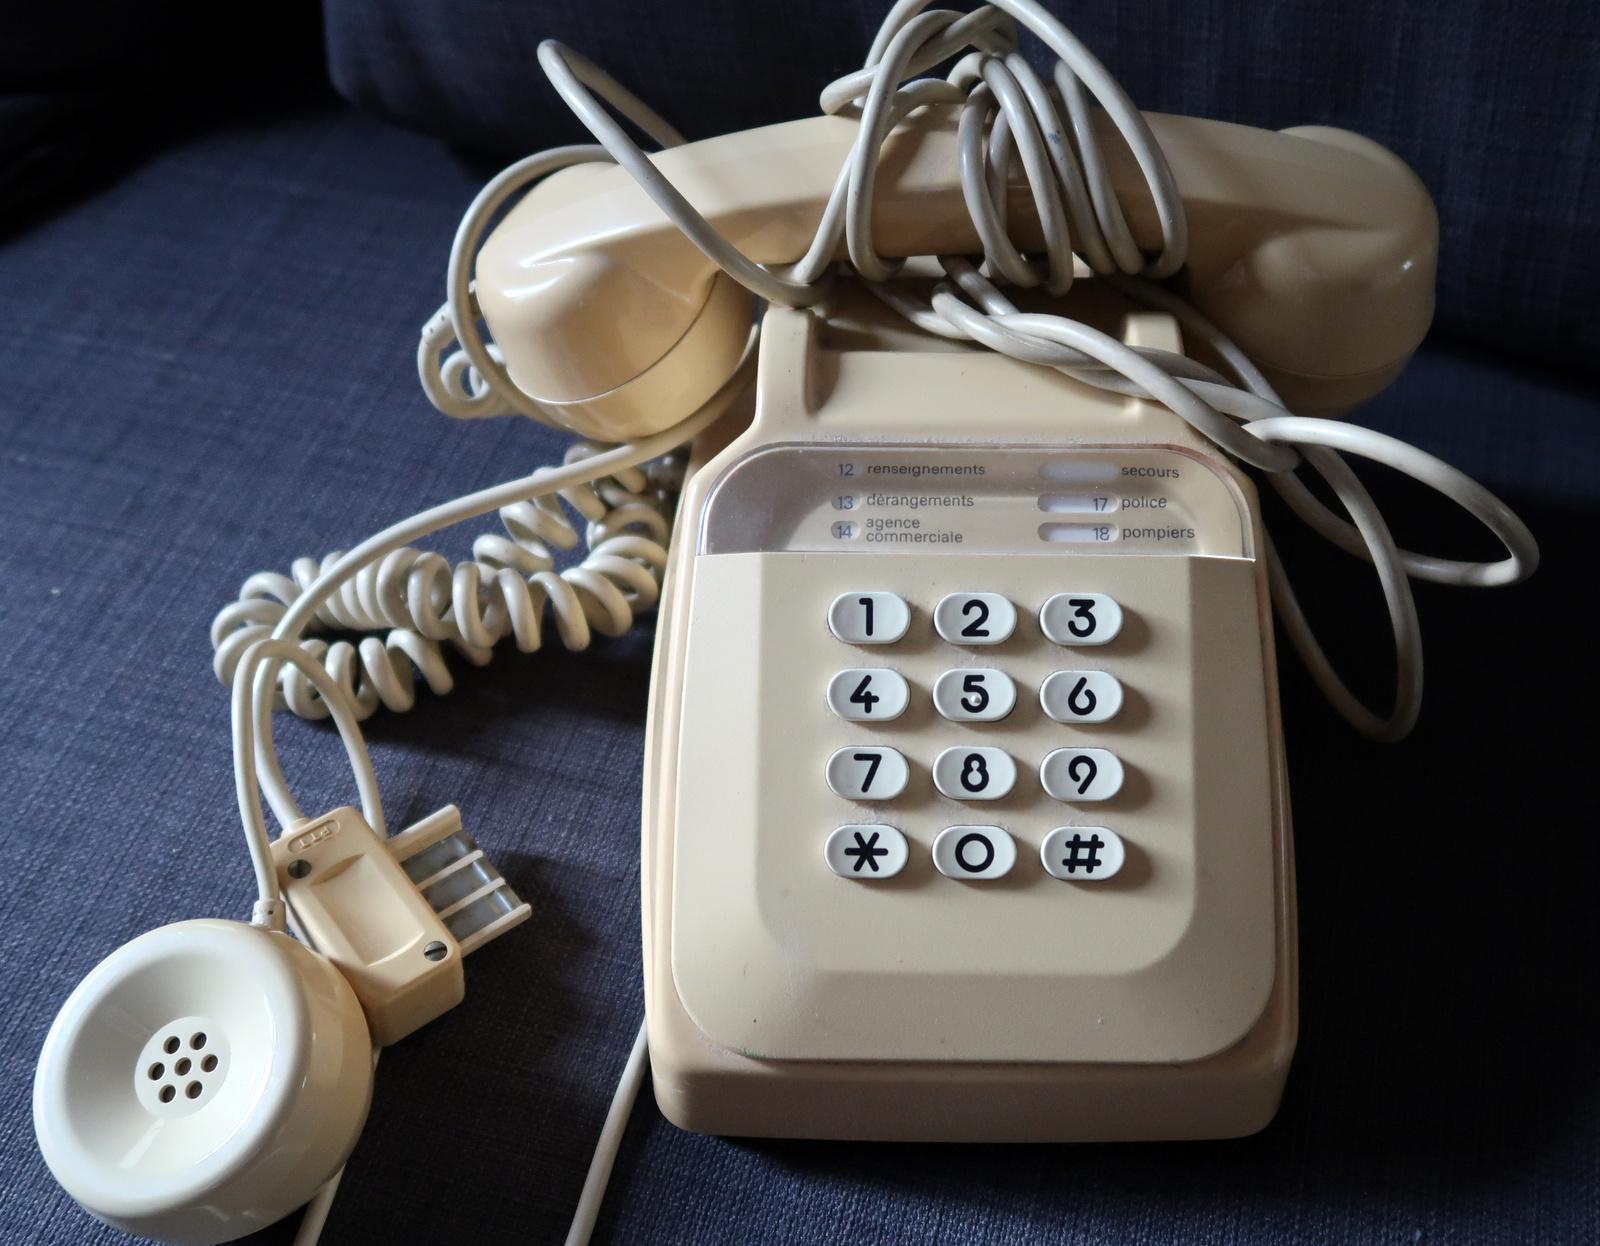 Entrez dans l'ère rétro avec notre téléphone d'intérieur Vintage By/One, une délicieuse relique qui allie design classique et commodité moderne. Mesurant 13 cm x 10 cm x 22 cm, ce téléphone dans une charmante teinte beige n'est pas seulement un